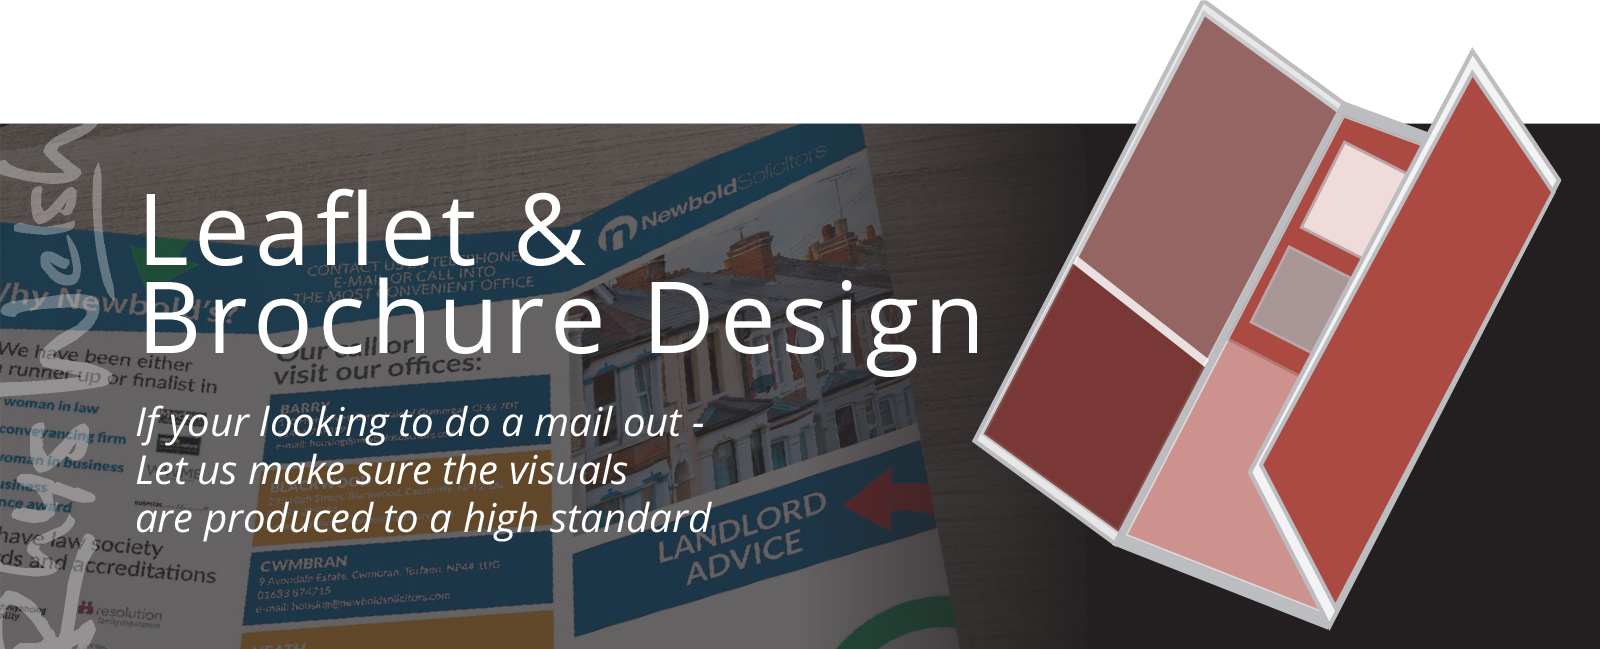 Leaflet-Brochure-Design-Graphic-for-websites-cardiff